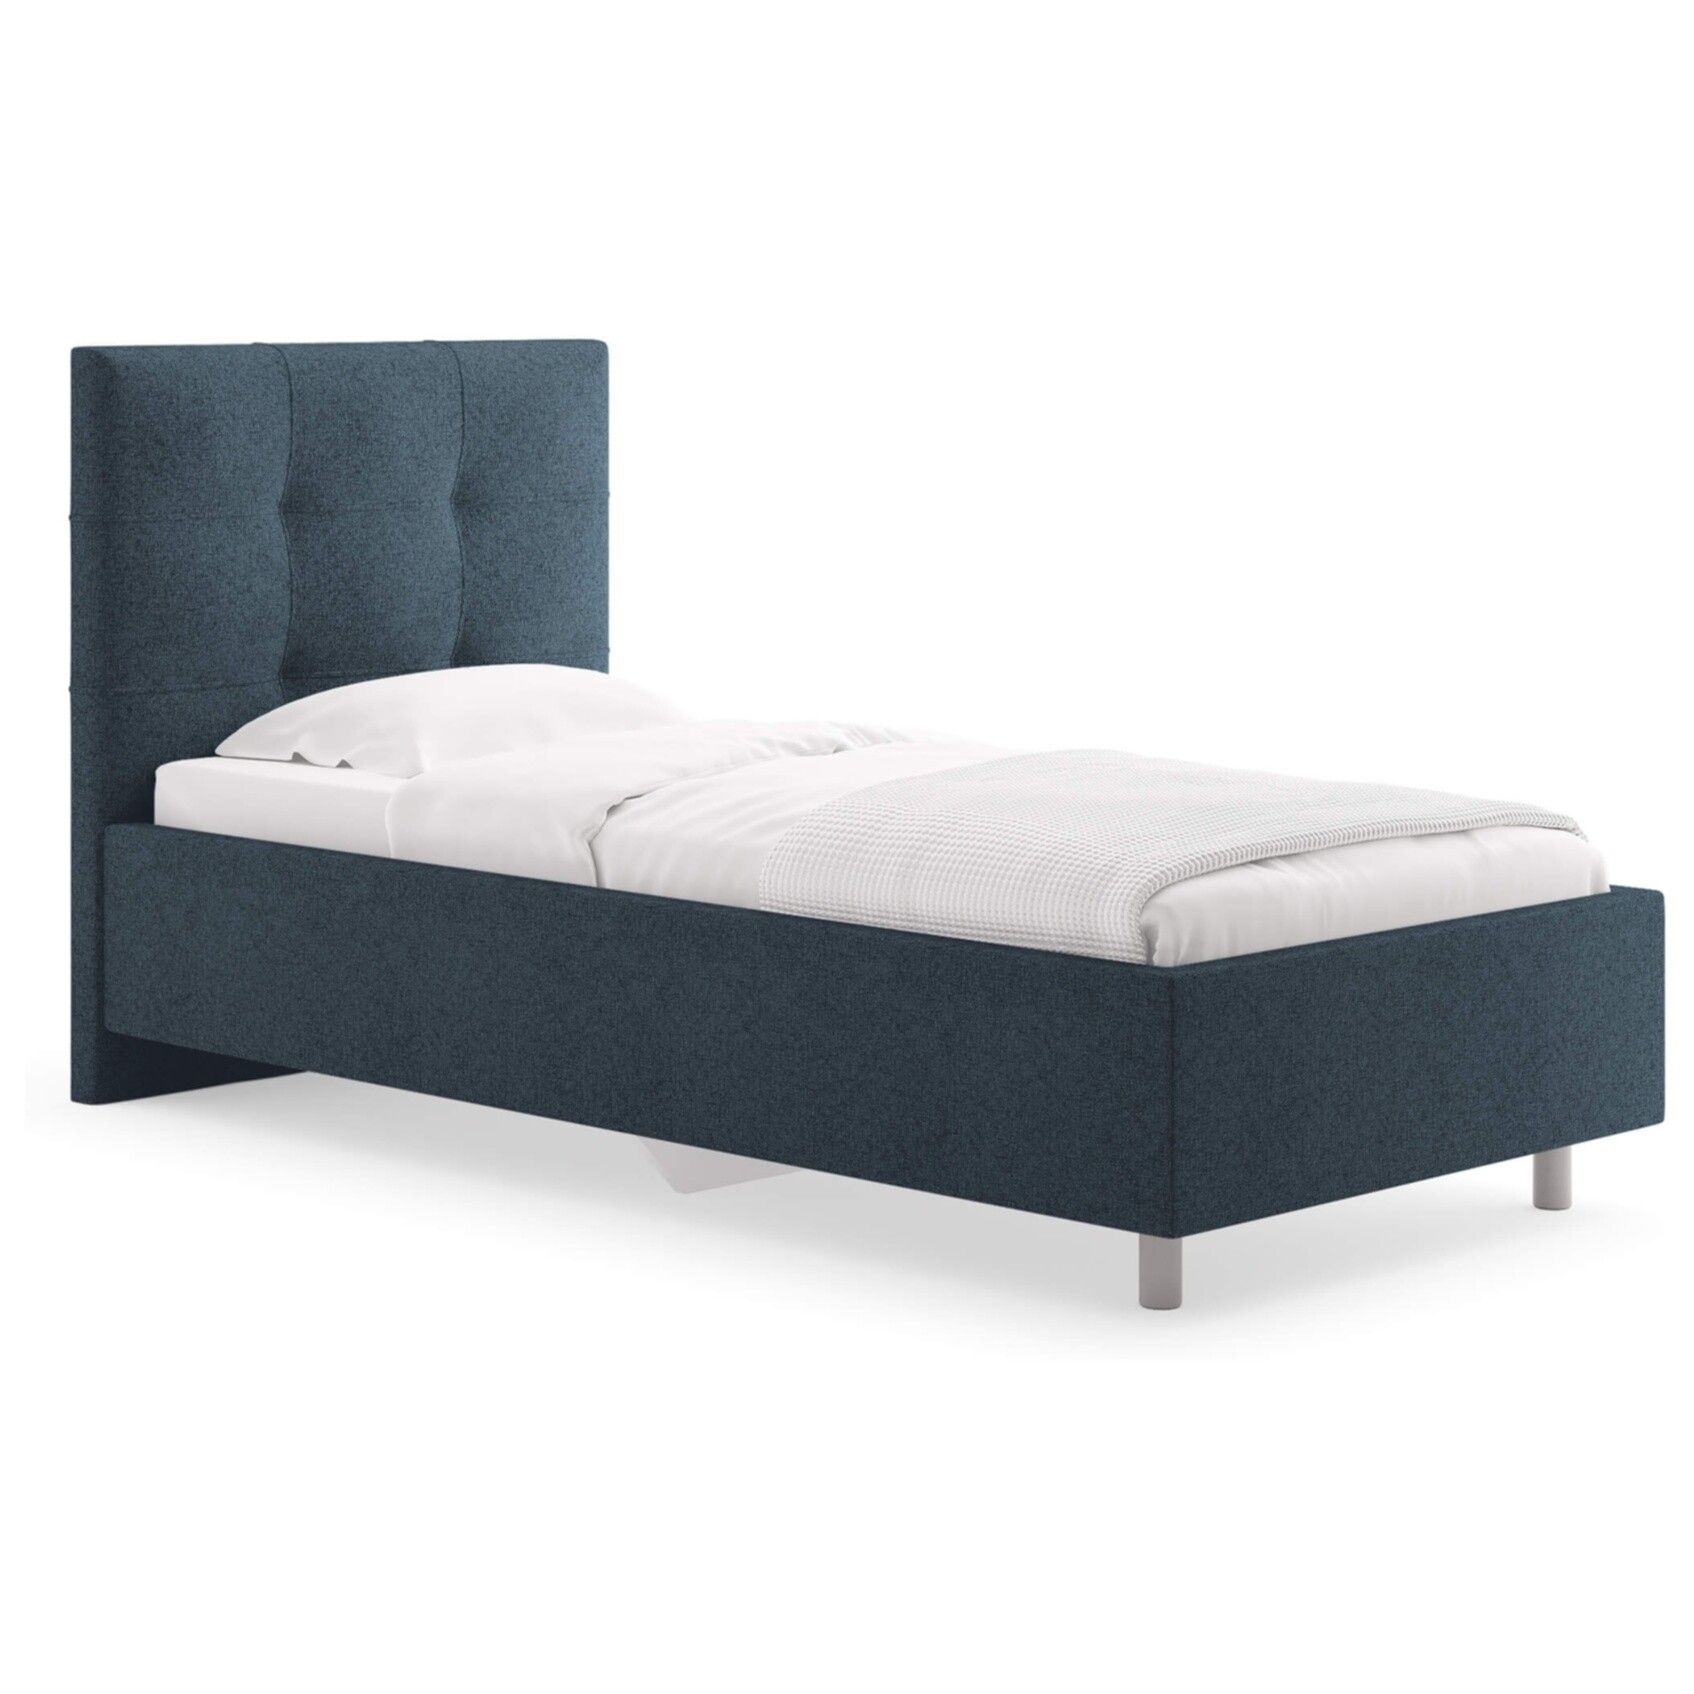 Кровать с мягким изголовьем односпальная 90х200 см кашемир синяя Caprice